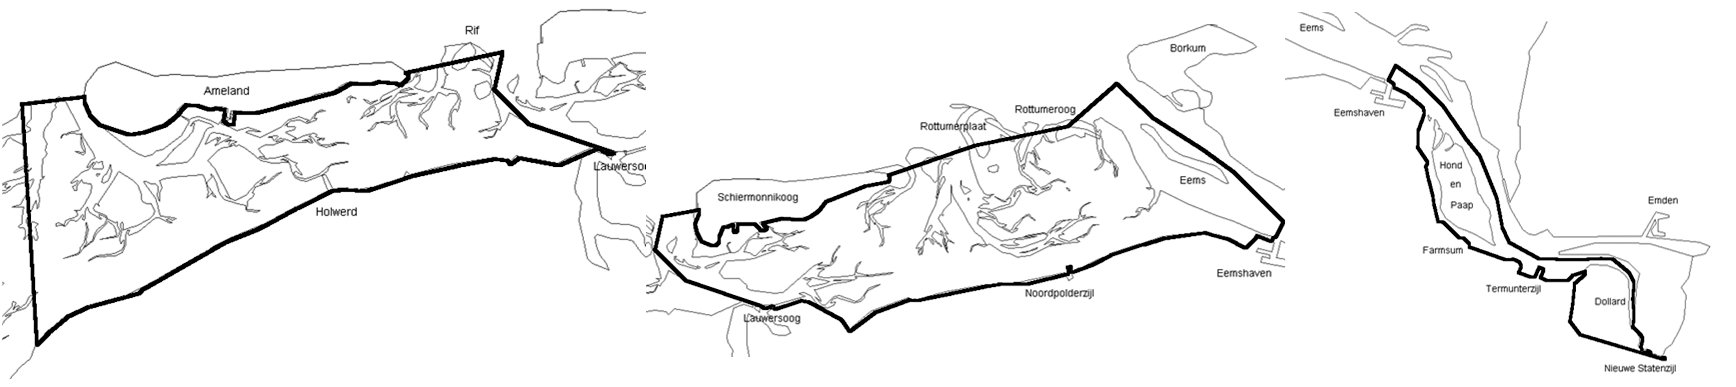 Figuur 3.3 Productiegebieden Oostelijke Waddenzee Friese Wad, Oostelijke Waddenzee Groninger Wad en Oostelijke Waddenzee Eems/Dollard